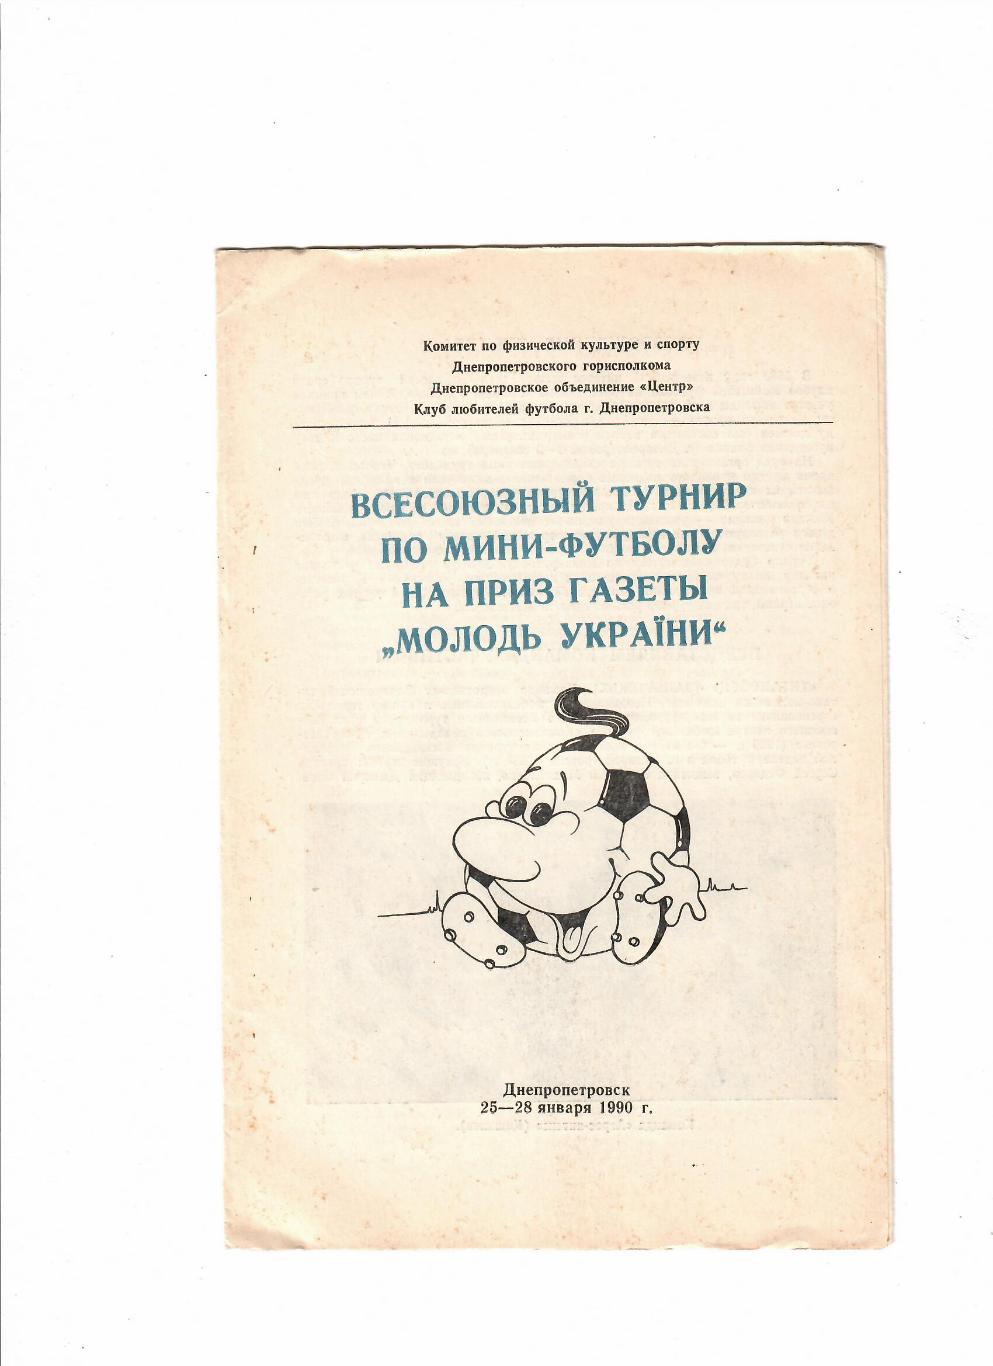 Всесоюзный турнир по мини-футболу на приз газеты Молодь Украины 1990